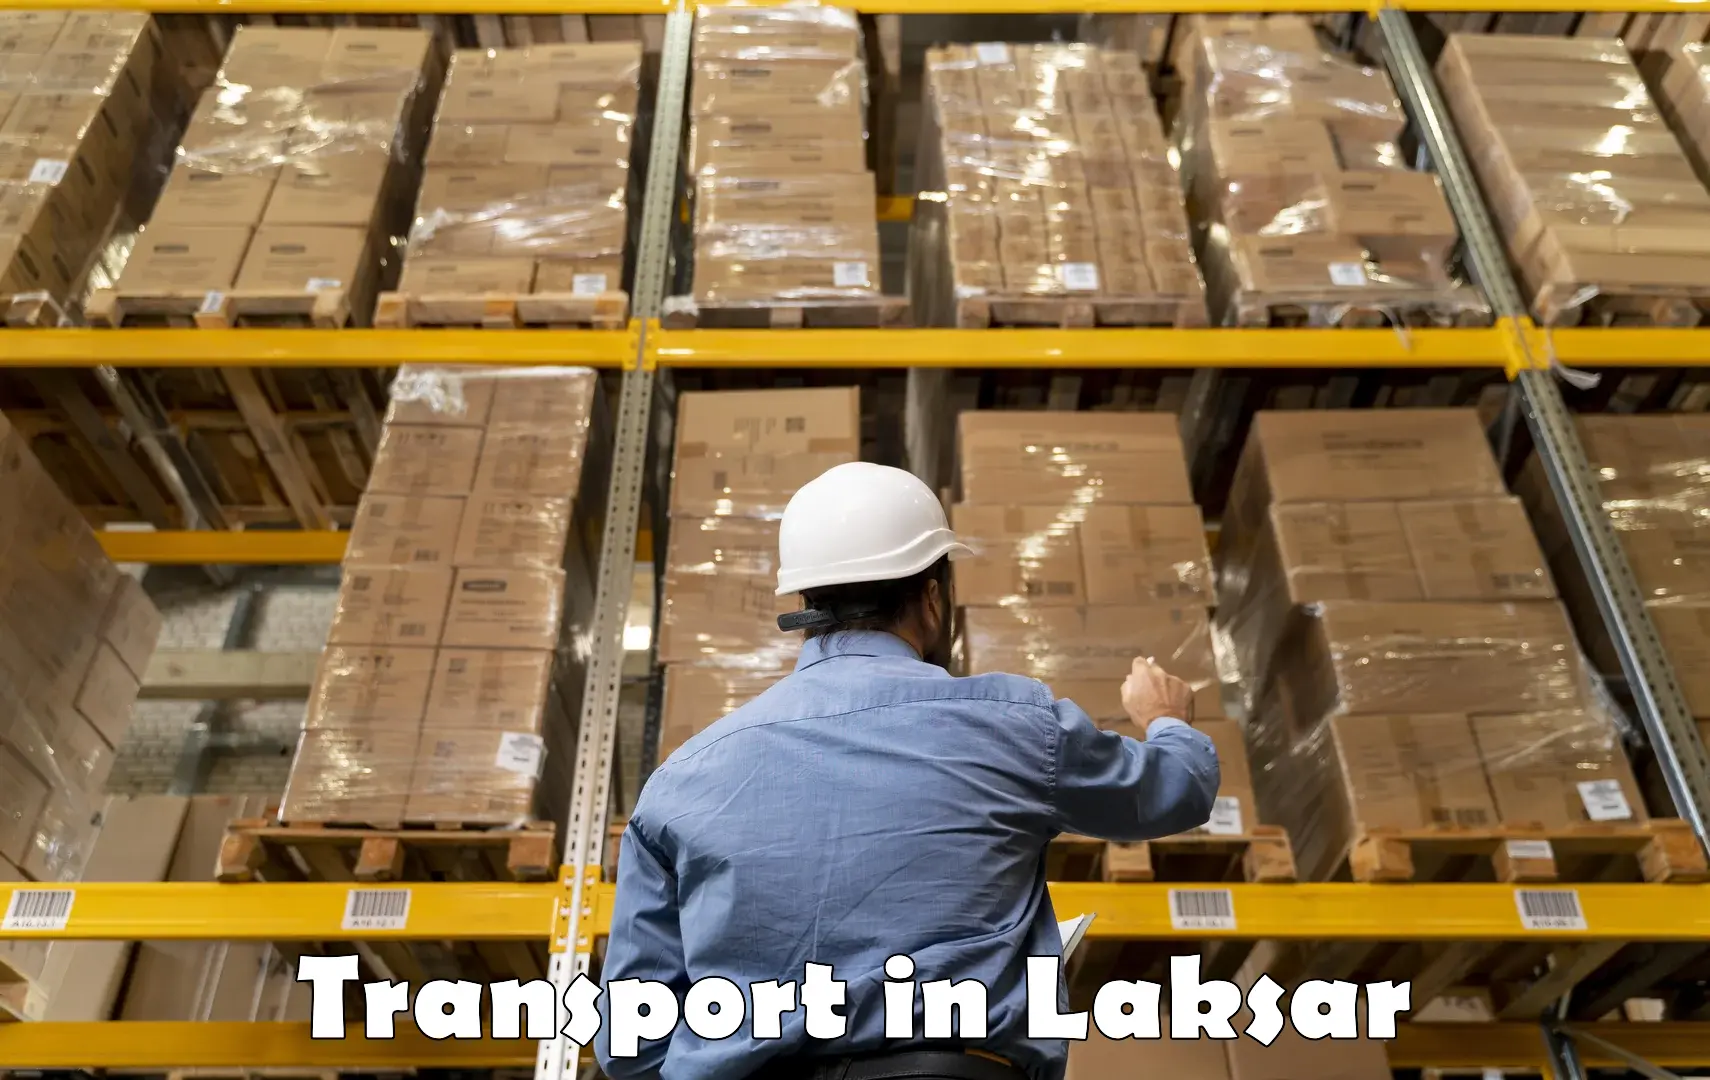 Intercity transport in Laksar